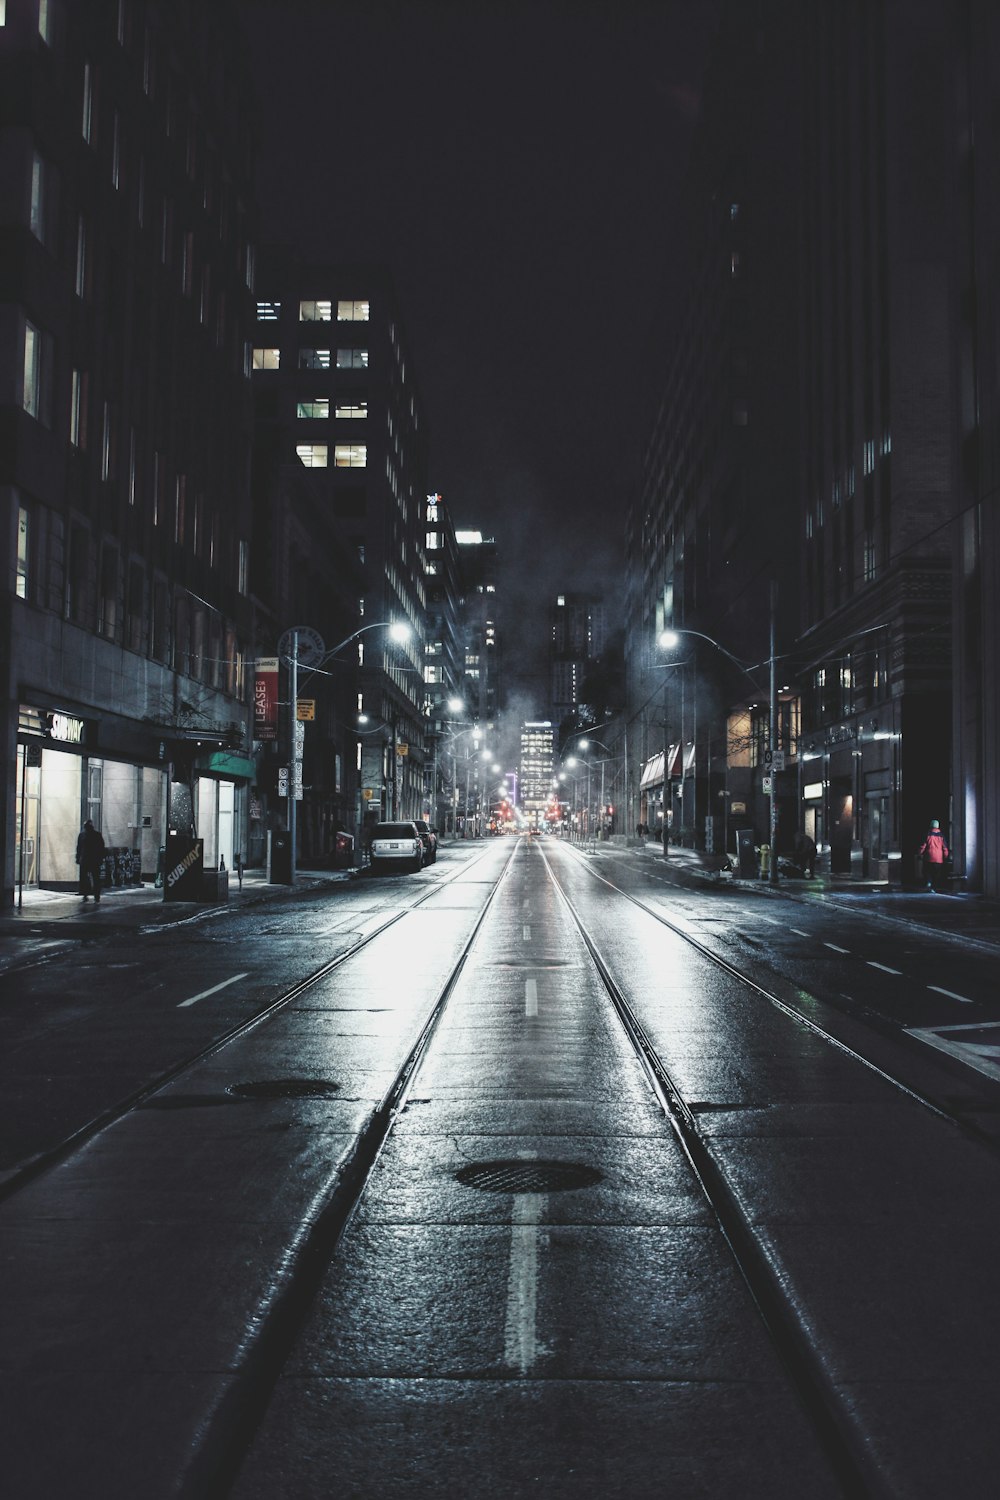 Carretera vacía en la ciudad durante la noche